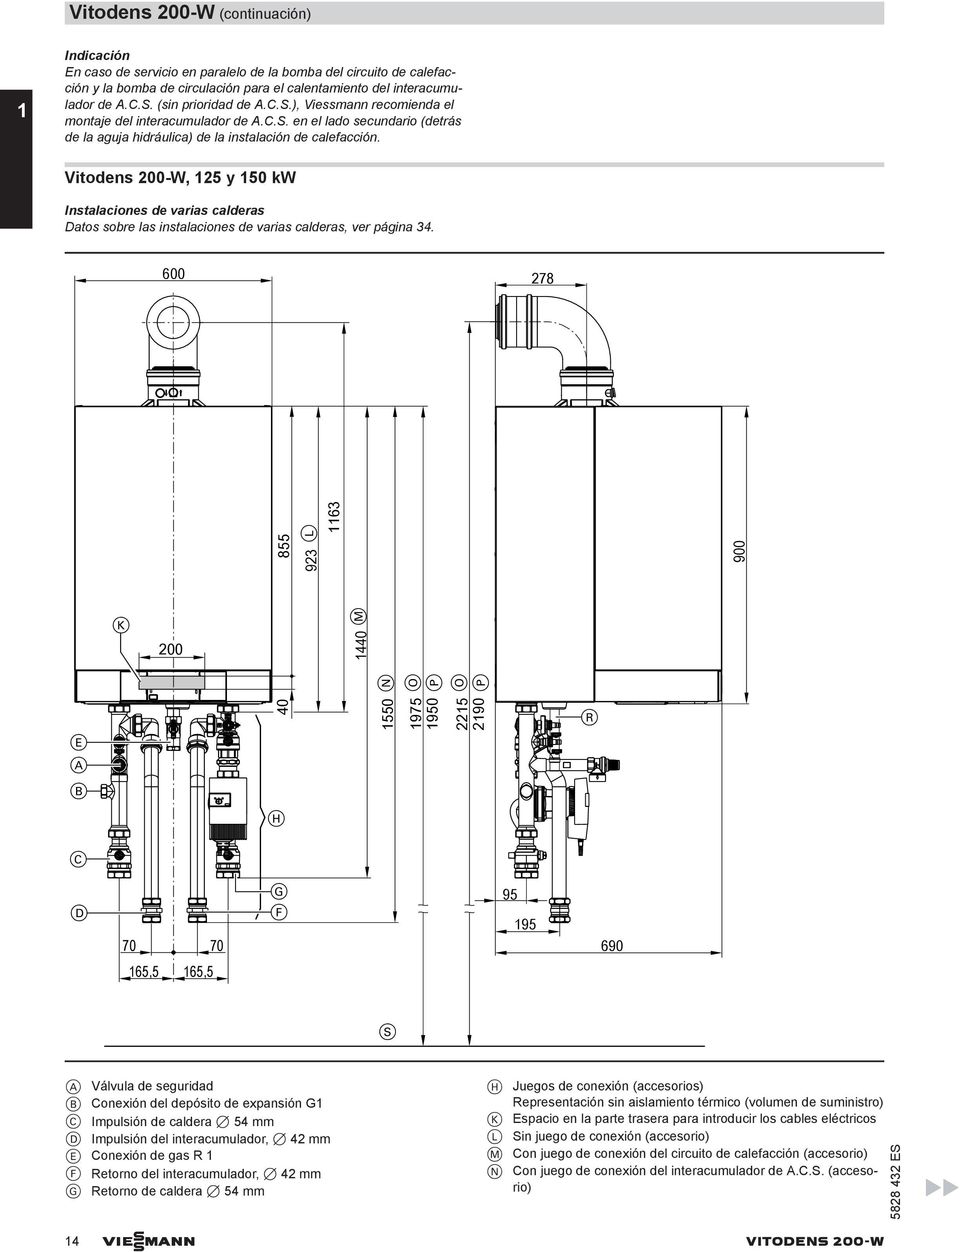 Vitodens 200-W, 125 y 150 kw Instalaciones de varias calderas Datos sobre las instalaciones de varias calderas, ver página 34.